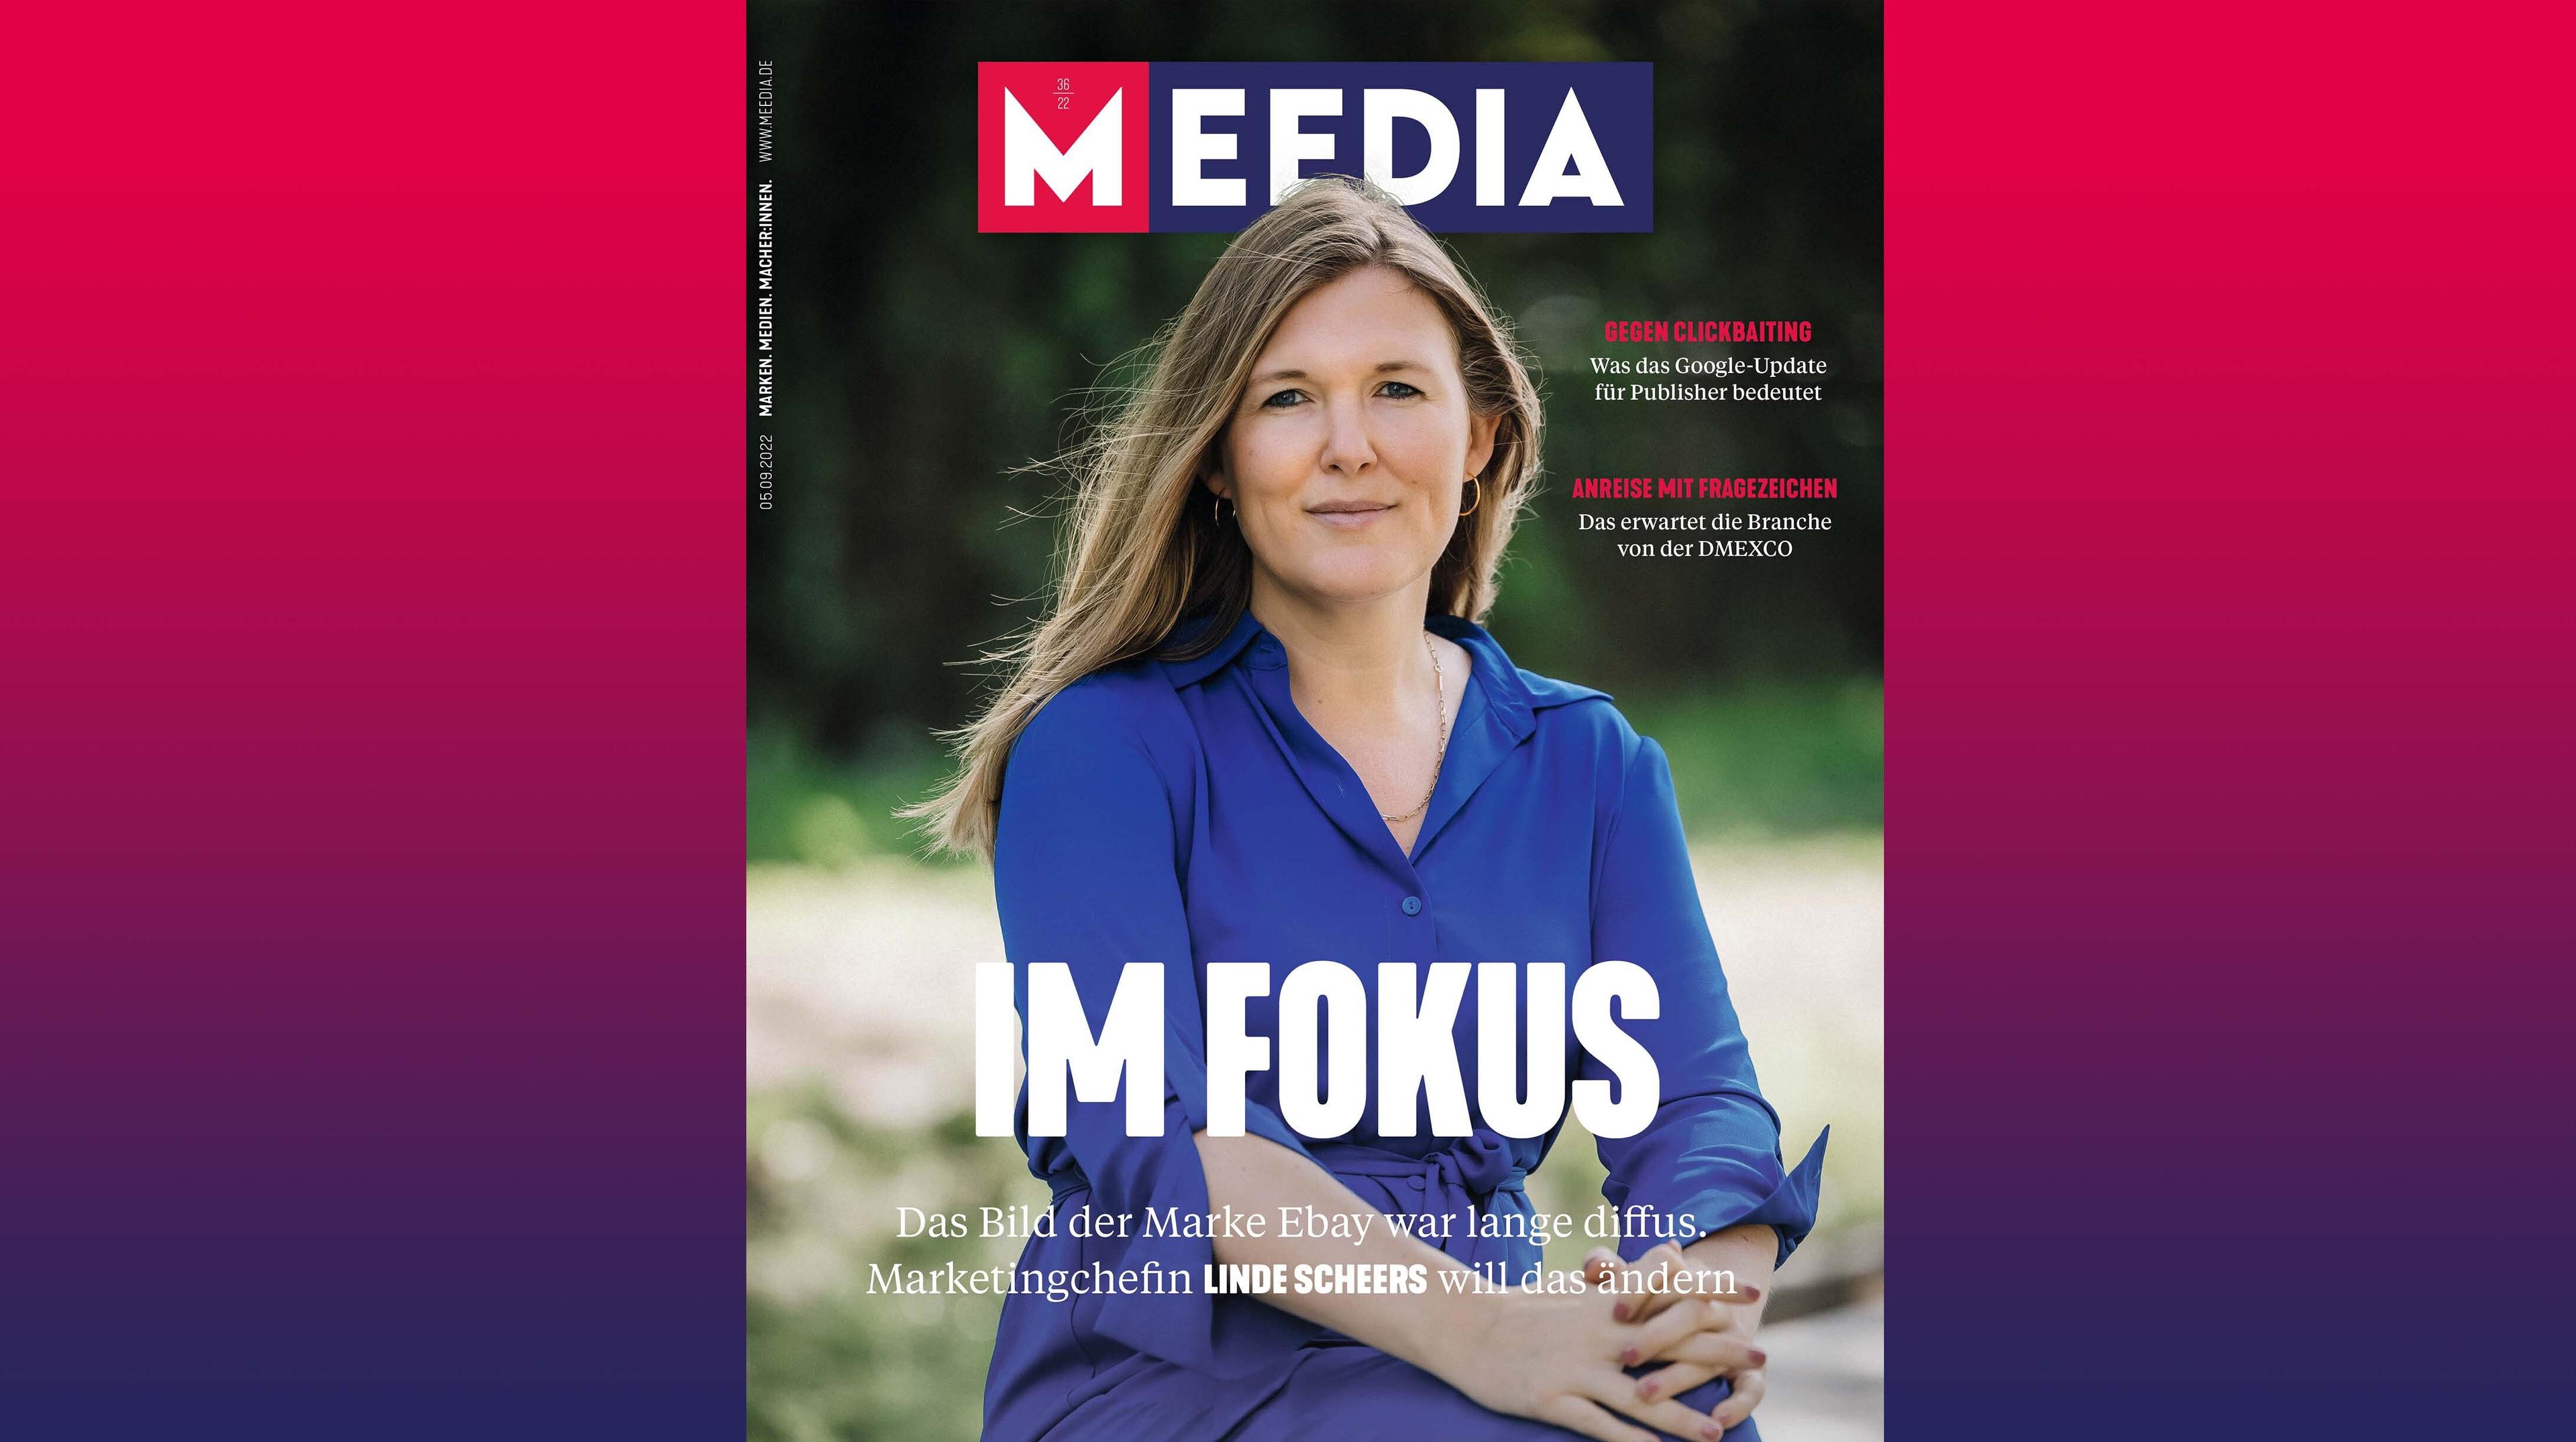 Ebay-Marketingchefin Linde Scheers auf dem Cover der MEEDIA –